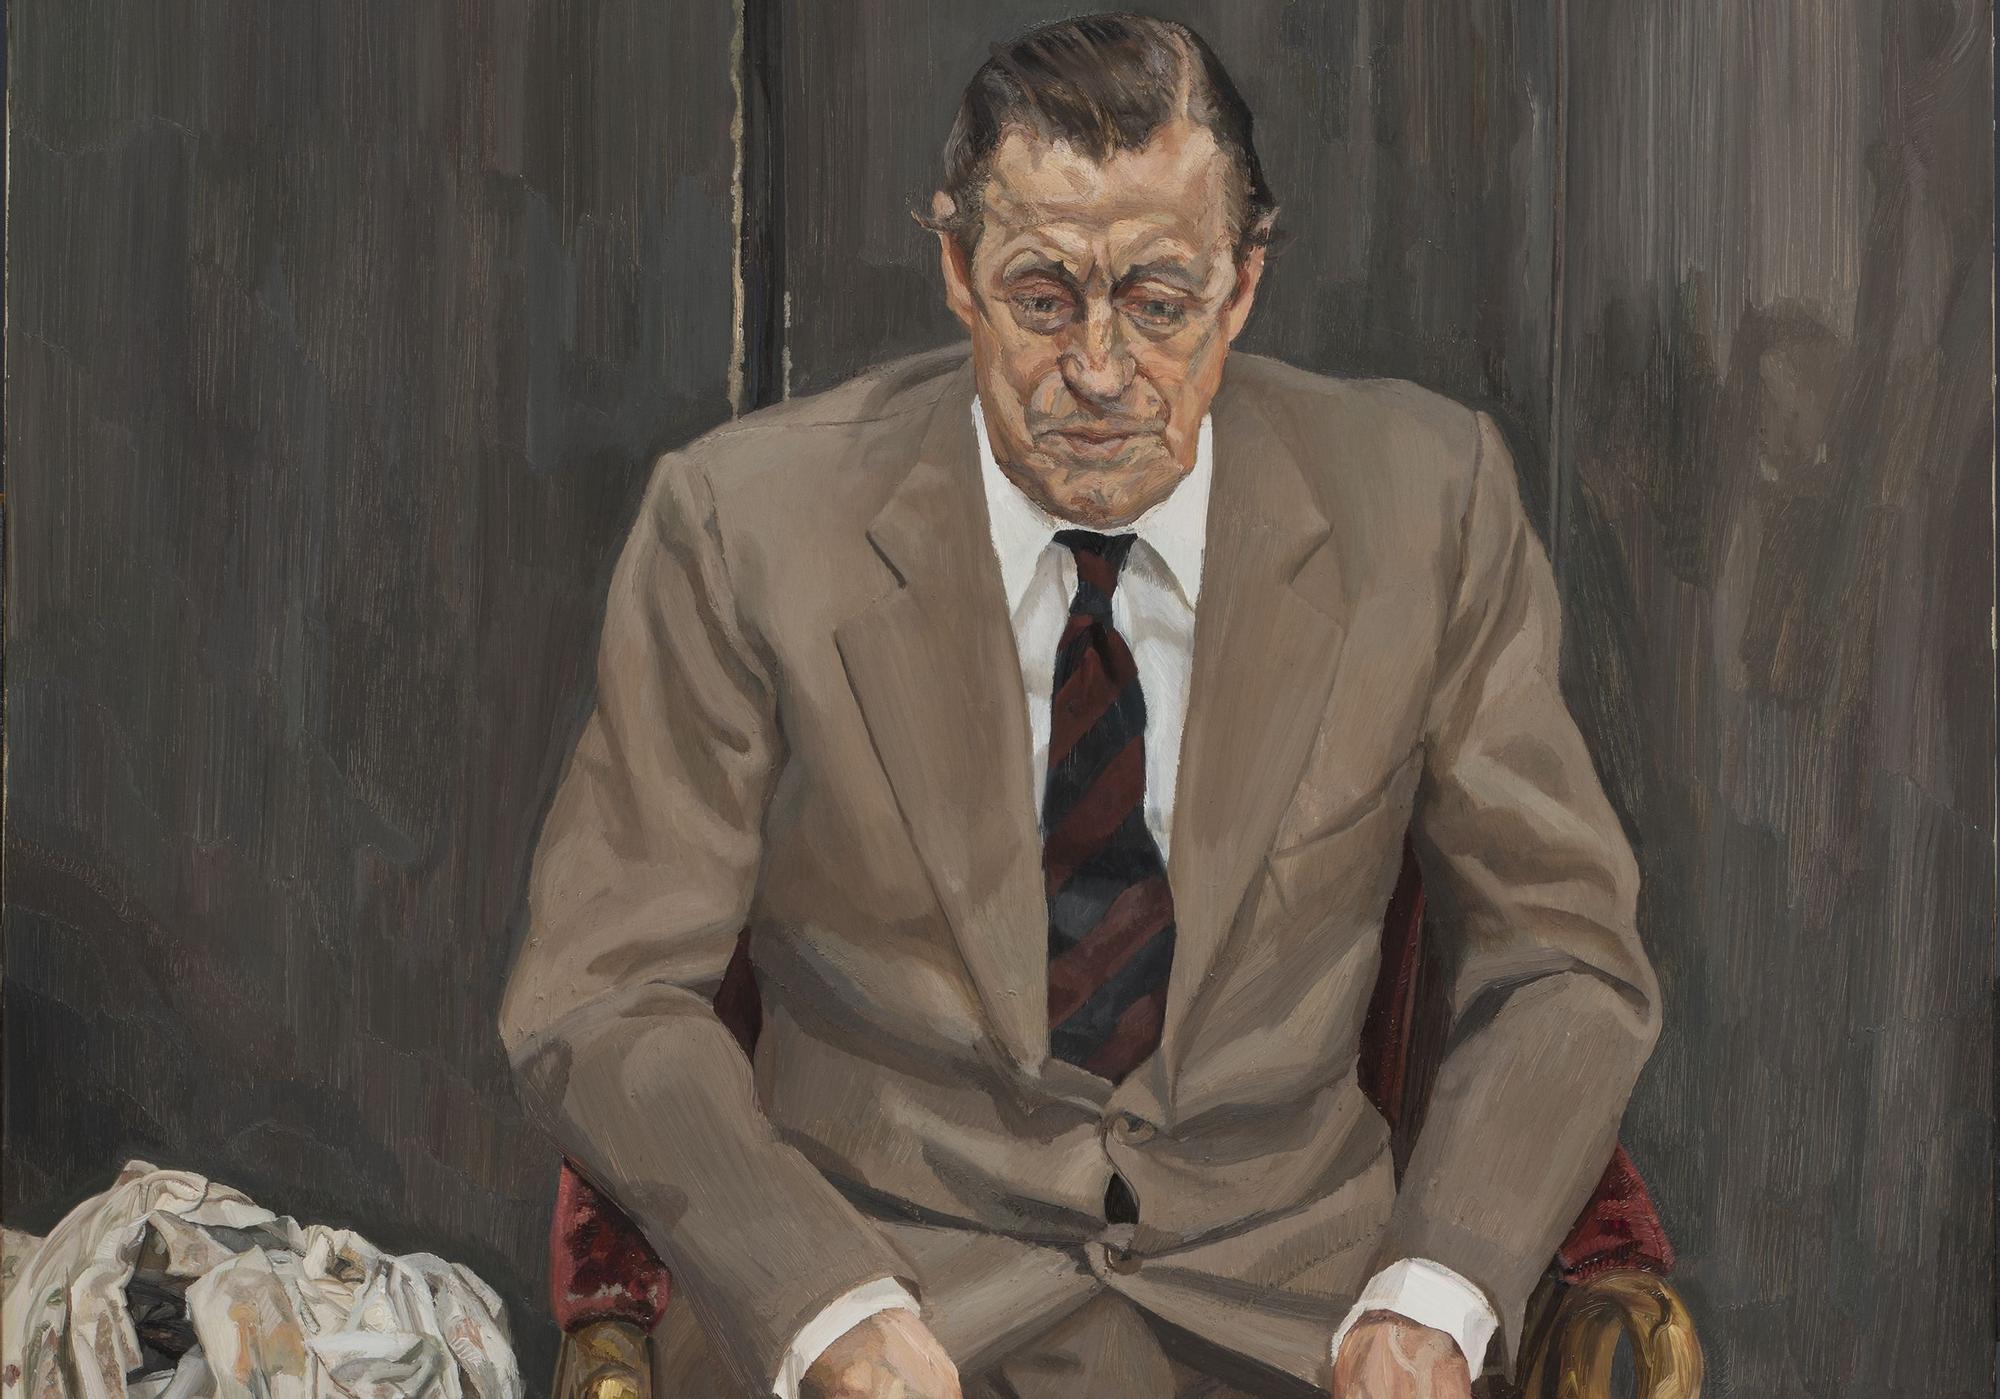 Fragmento de 'Hombre en una silla', el retrato de que Francesca Thyssen ha donado al Estado.